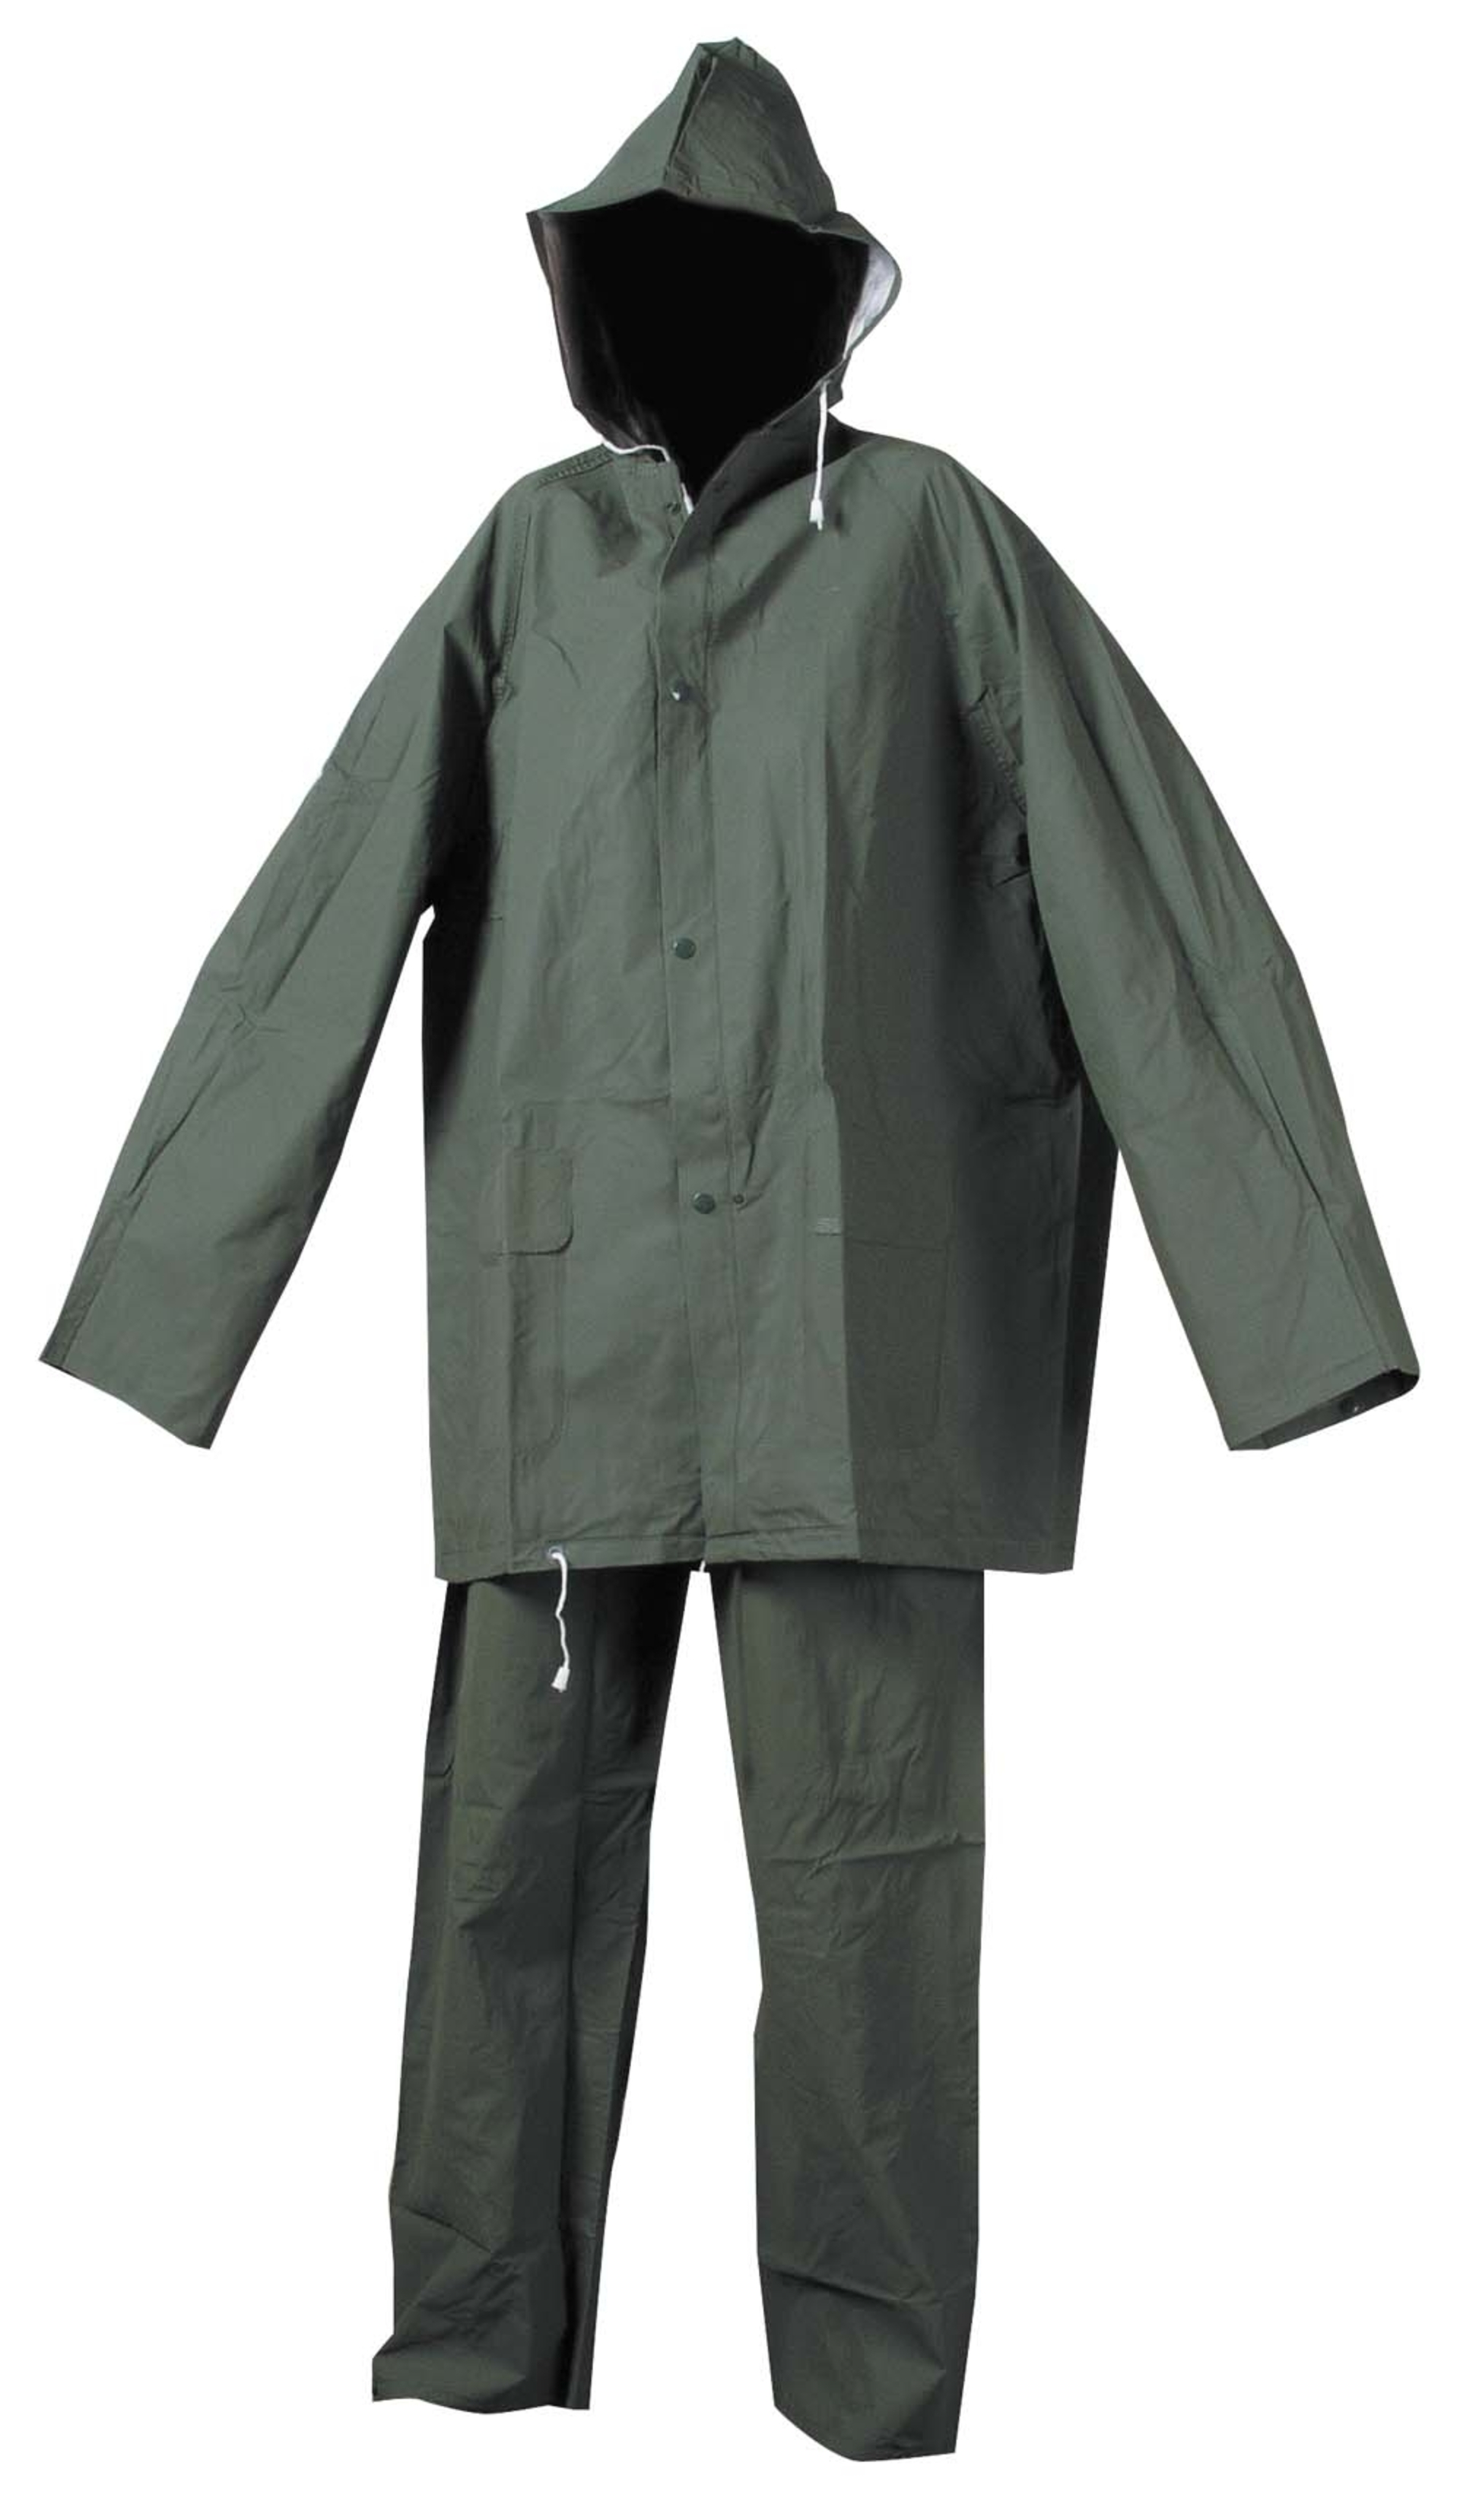 Cerva HYDRA Oblek nepromokavý zelená 3XL + Bezplatné vrácení zboží